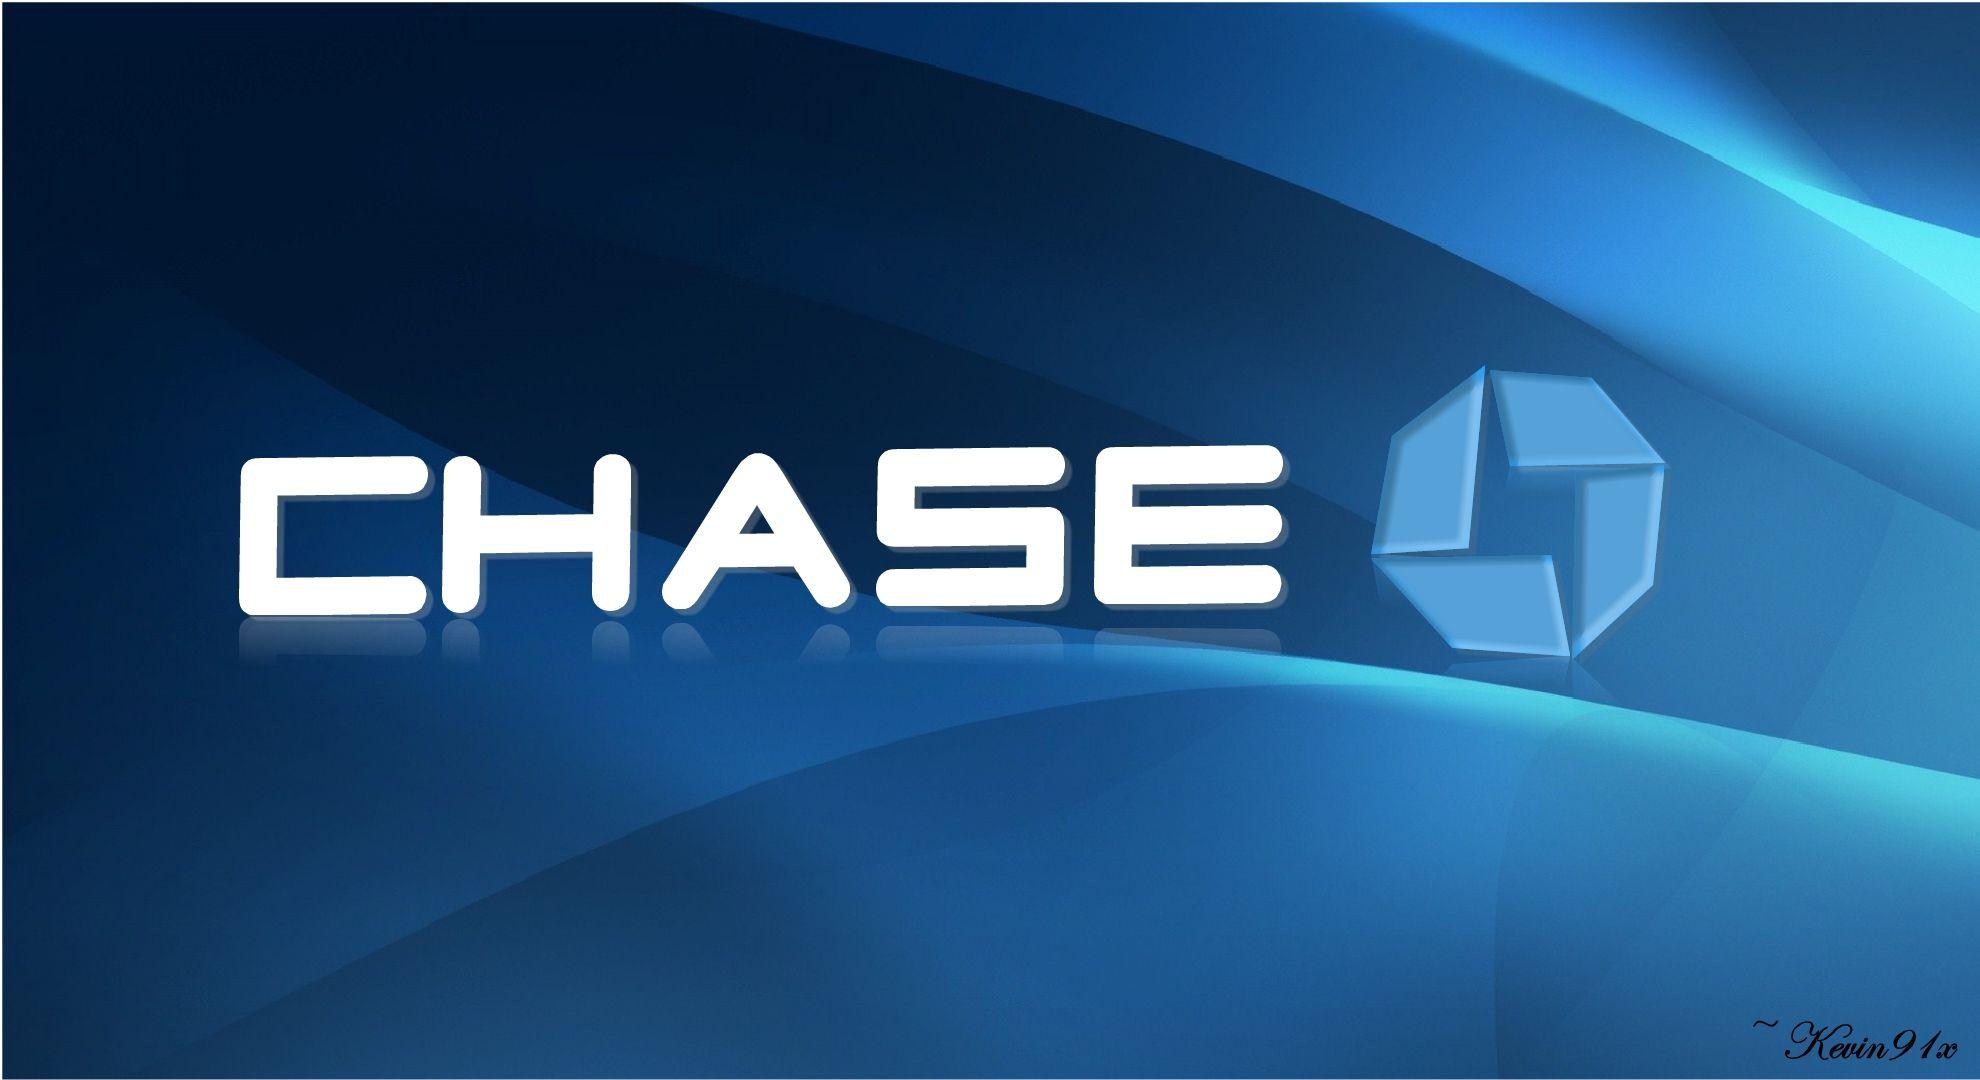 Chase Bank Logo - Chase bank Logos